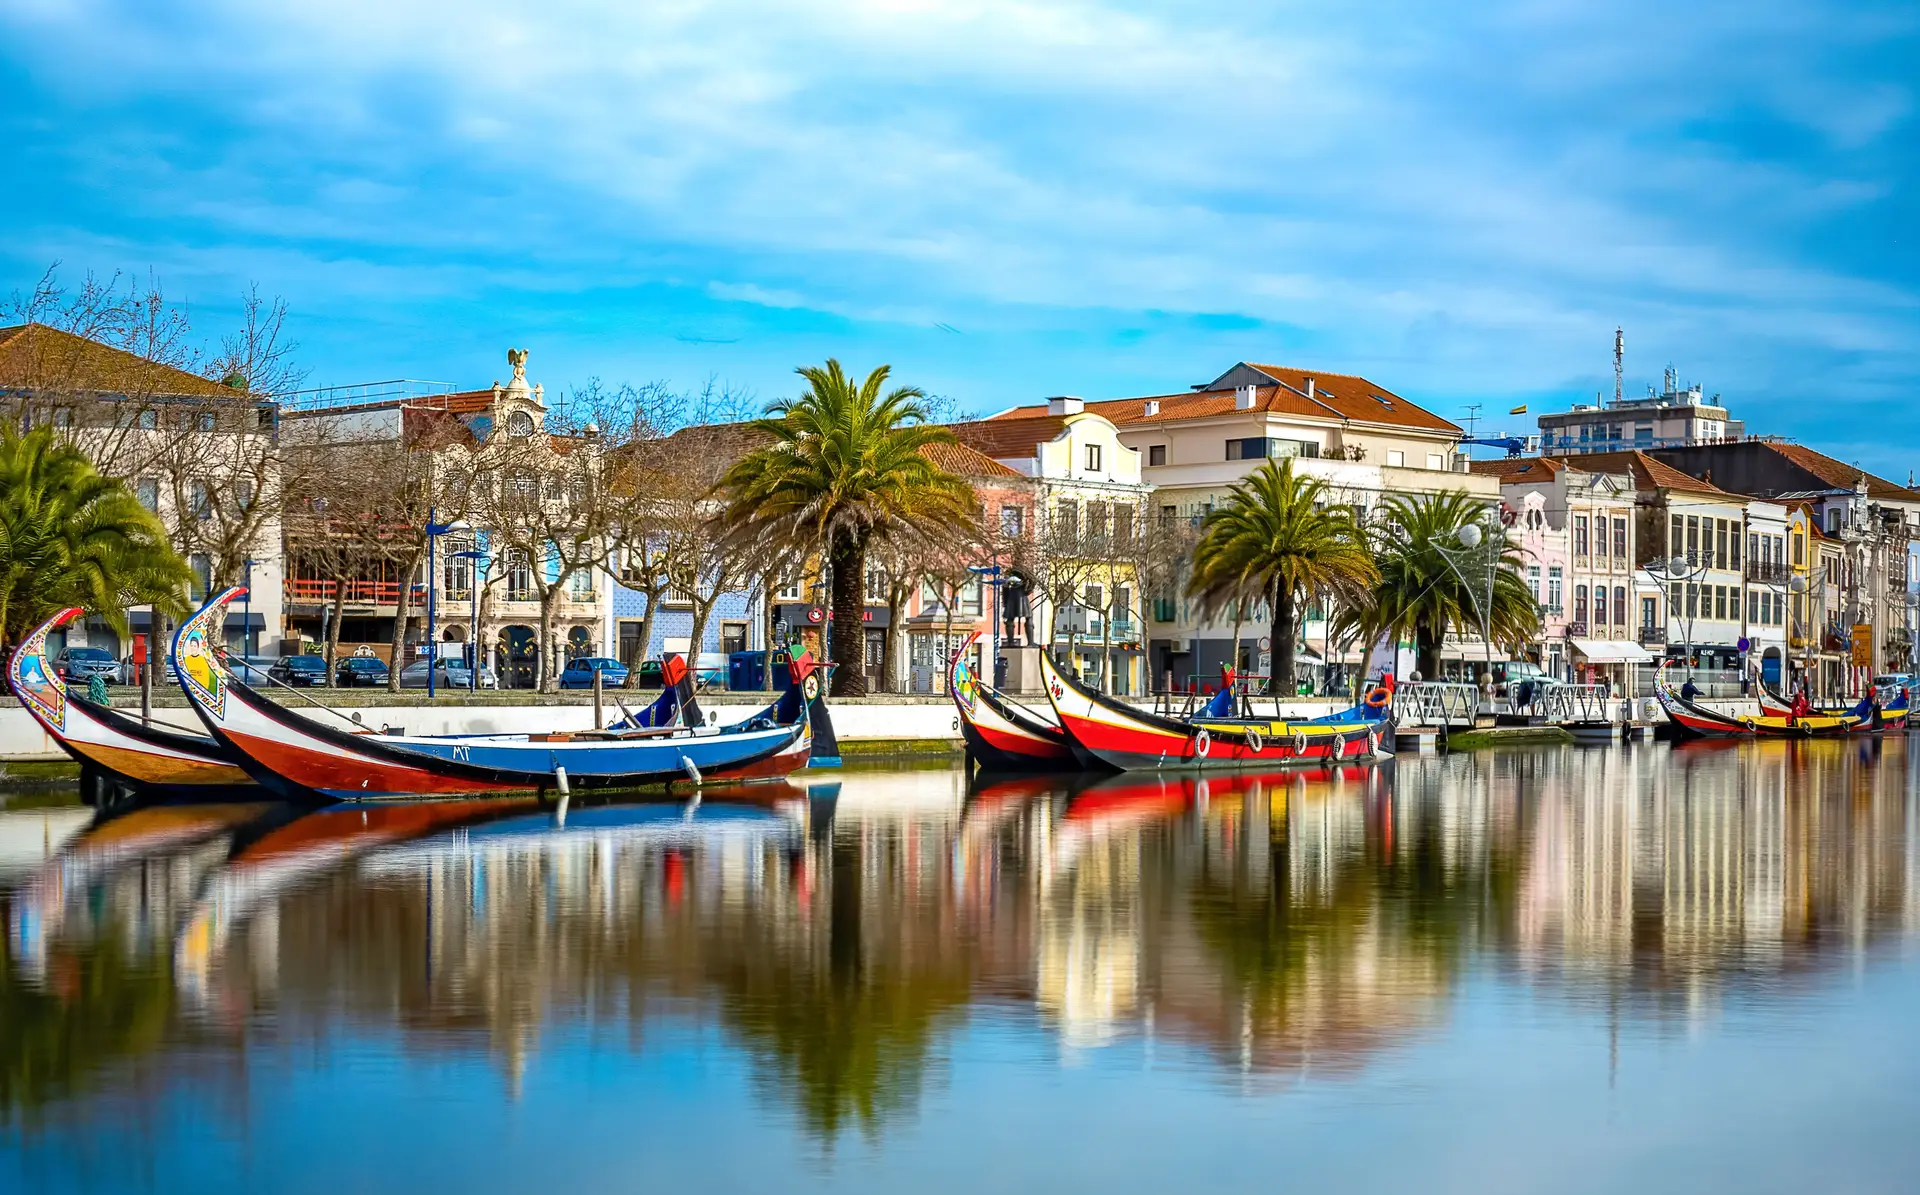 Cidade portuguesa que vai ser Capital Europeia da Cultura em 2027 anunciada hoje